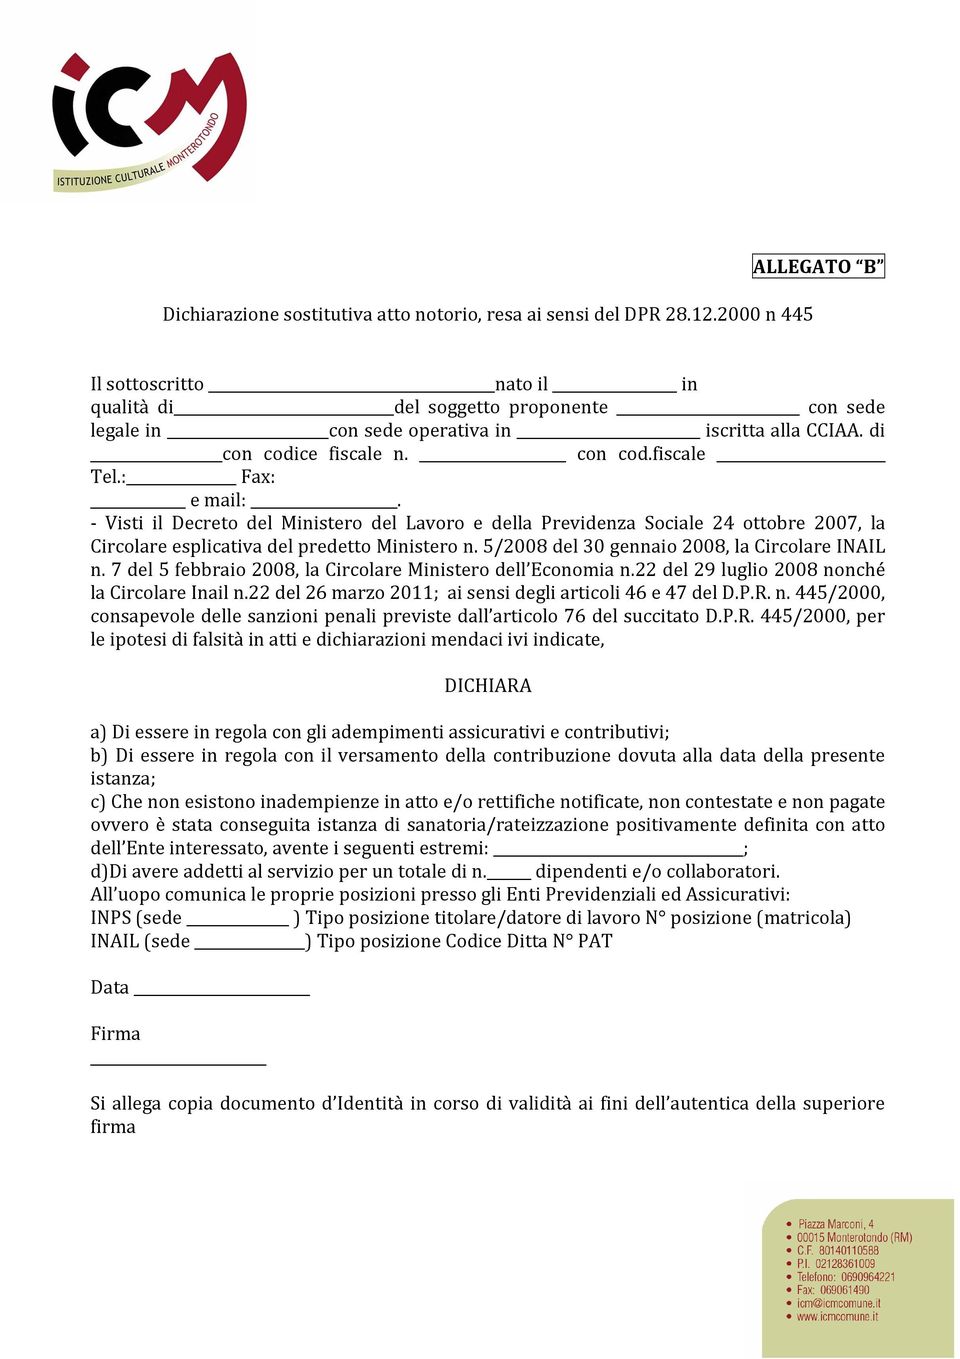 : Fax: e mail:. - Visti il Decreto del Ministero del Lavoro e della Previdenza Sociale 24 ottobre 2007, la Circolare esplicativa del predetto Ministero n.